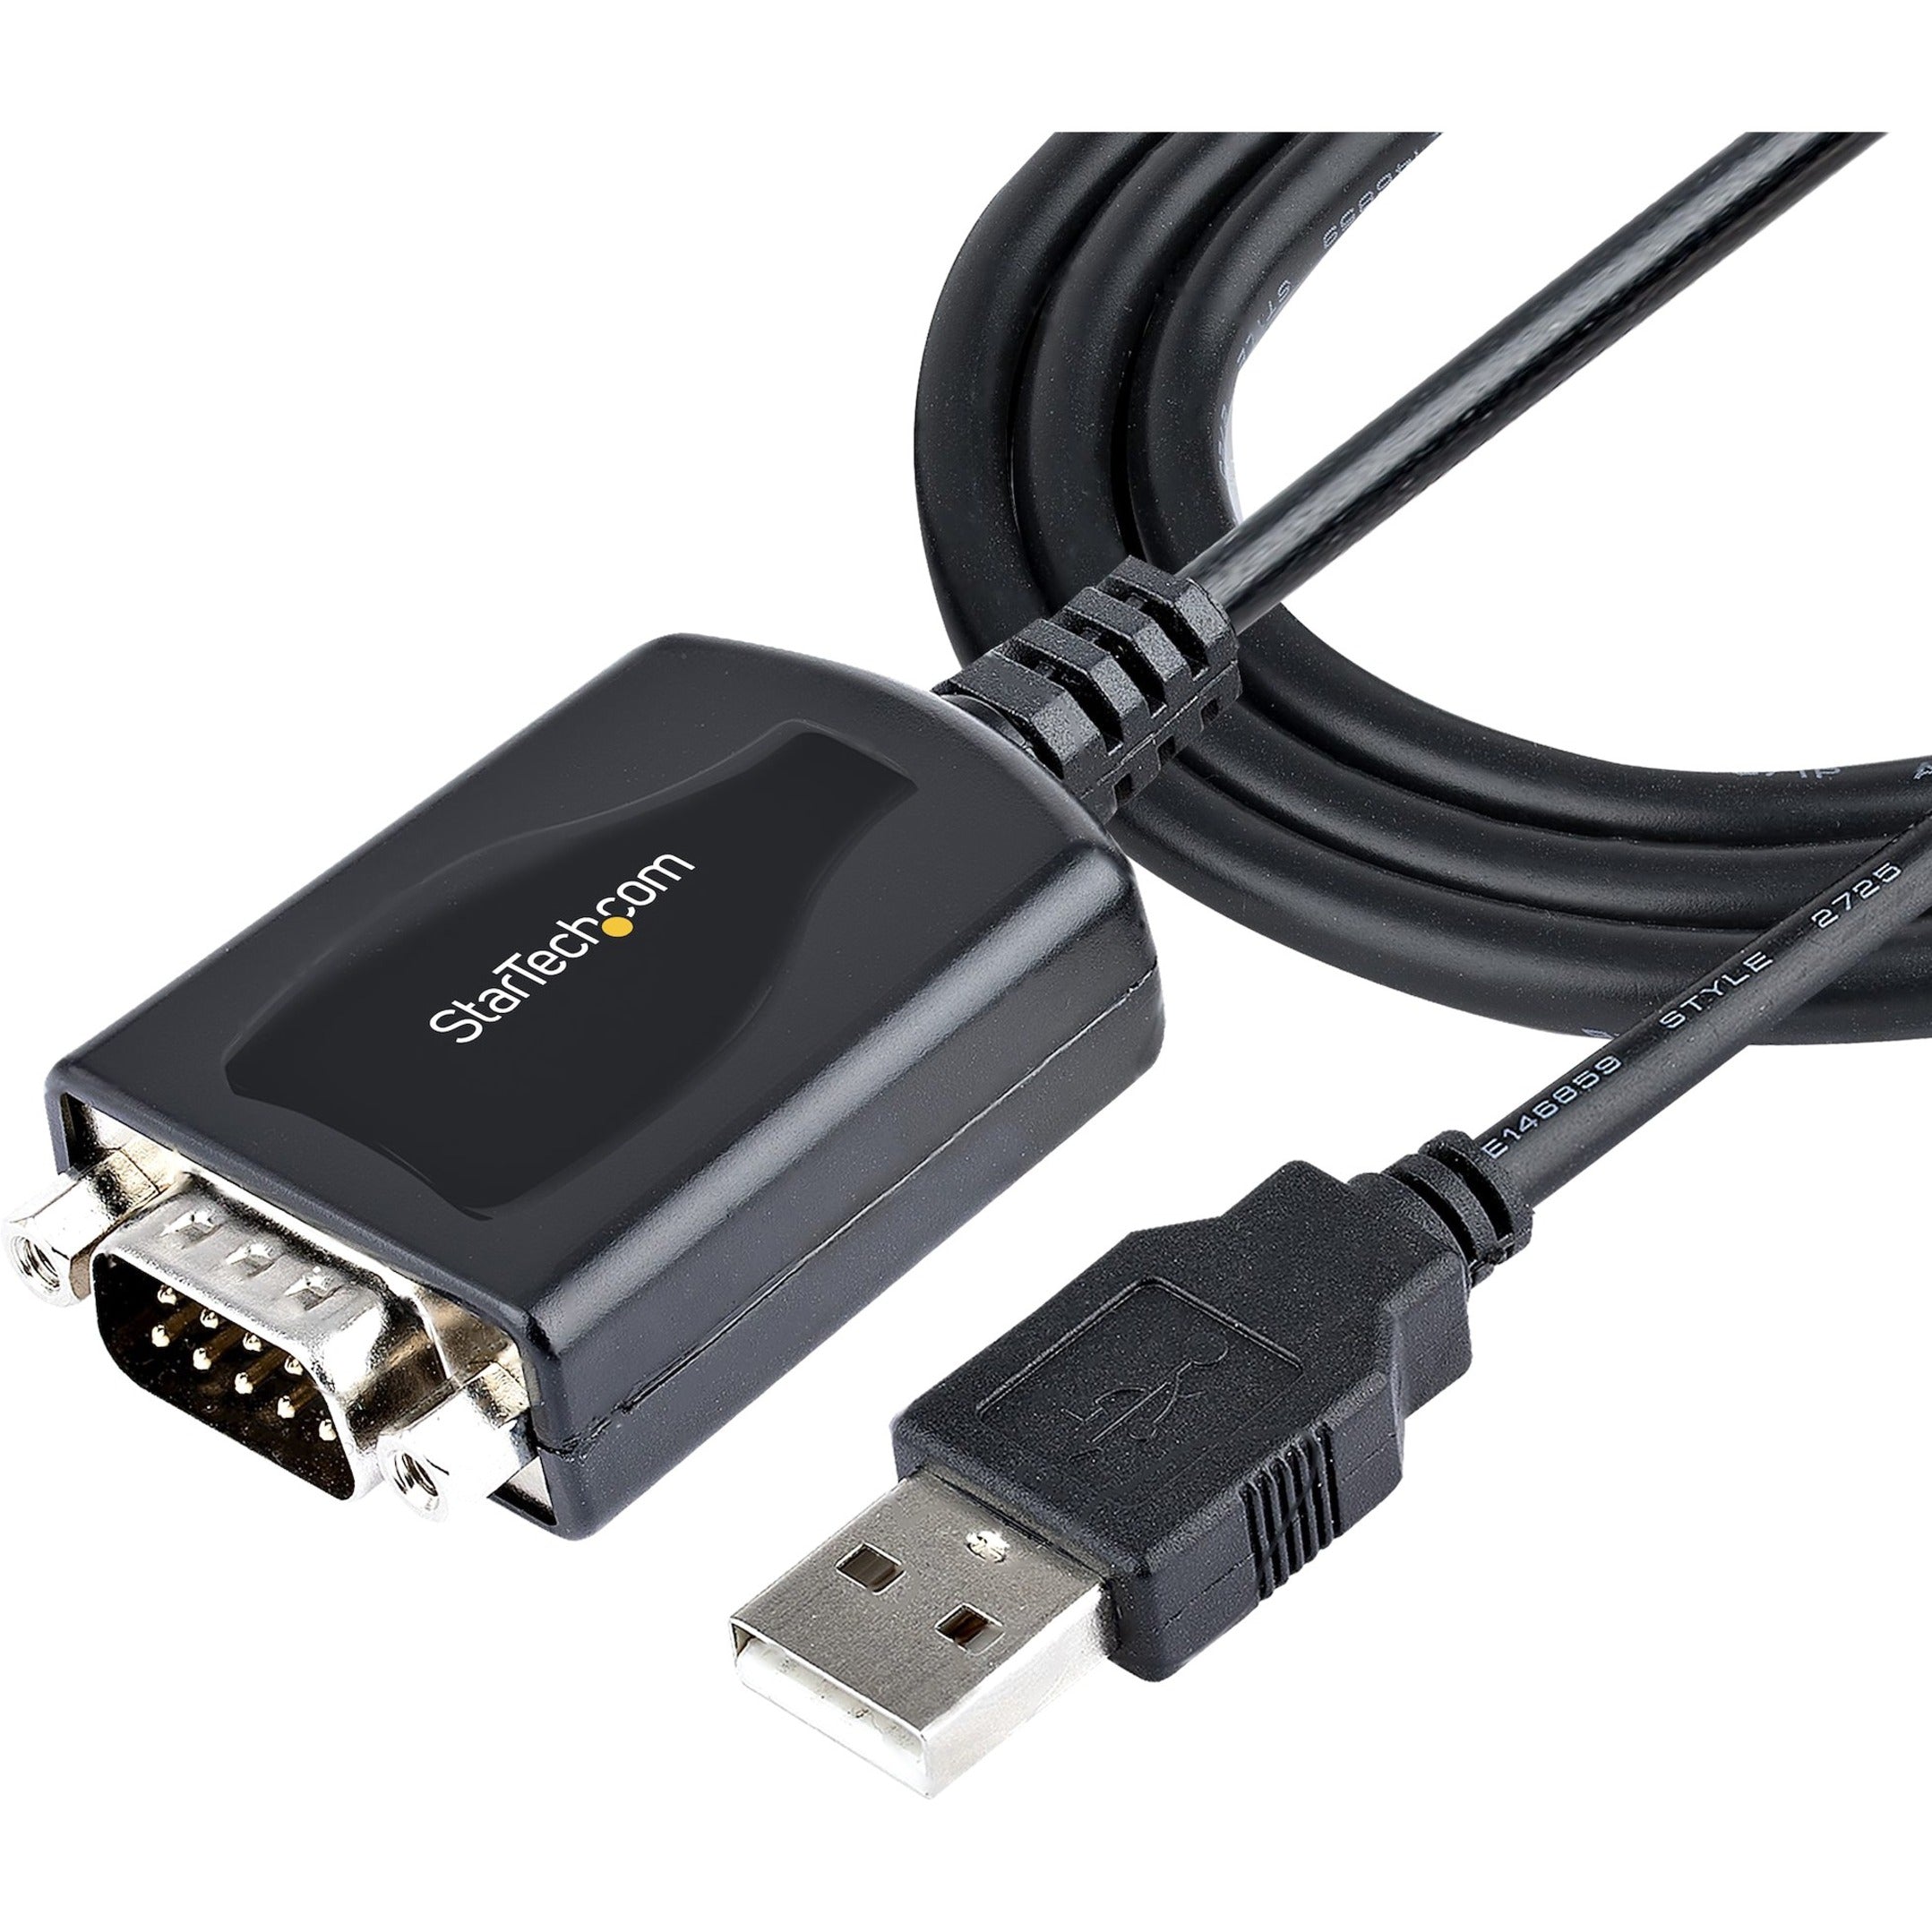 StarTech.com 1P3FPC-USB-SERIAL محول USB إلى تسلسلي ، طول الكابل 3.28 قدم ، قفل براغي